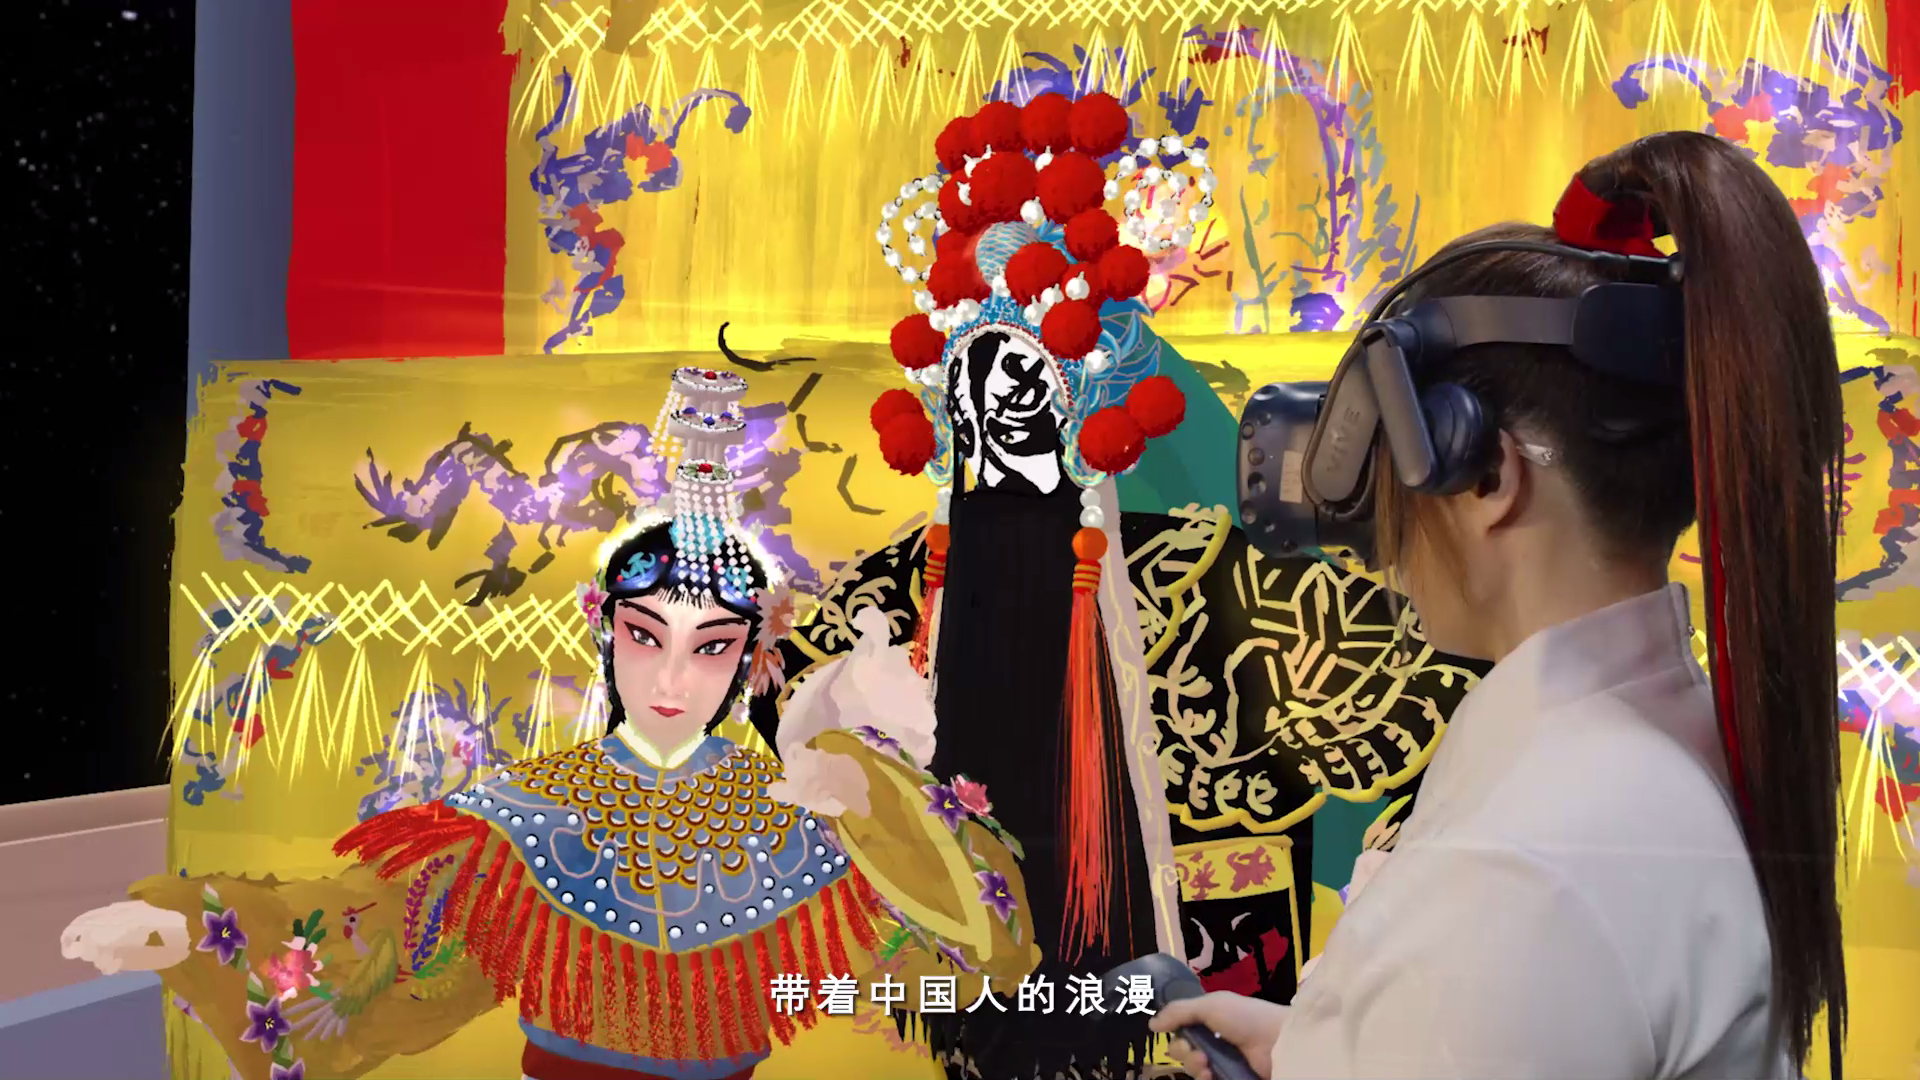 VR绘制丨沉浸式体验中国式现代化图景